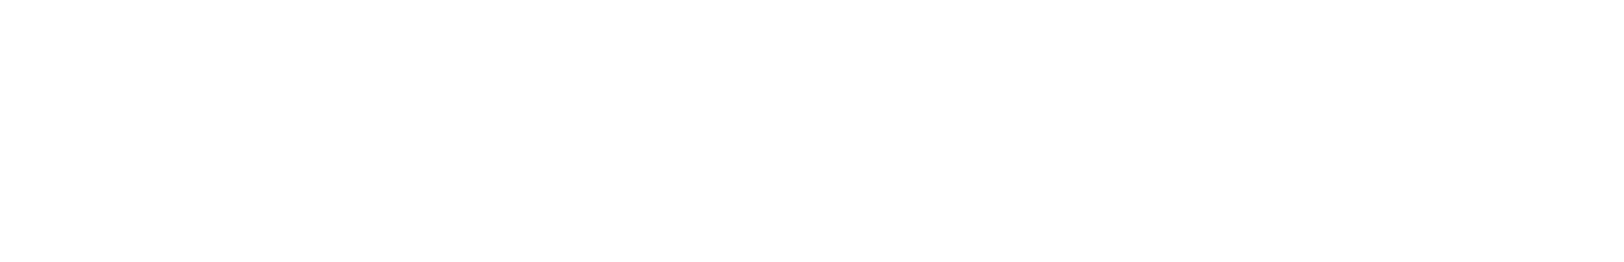 LVMH logo grand pour les fonds sombres (PNG transparent)